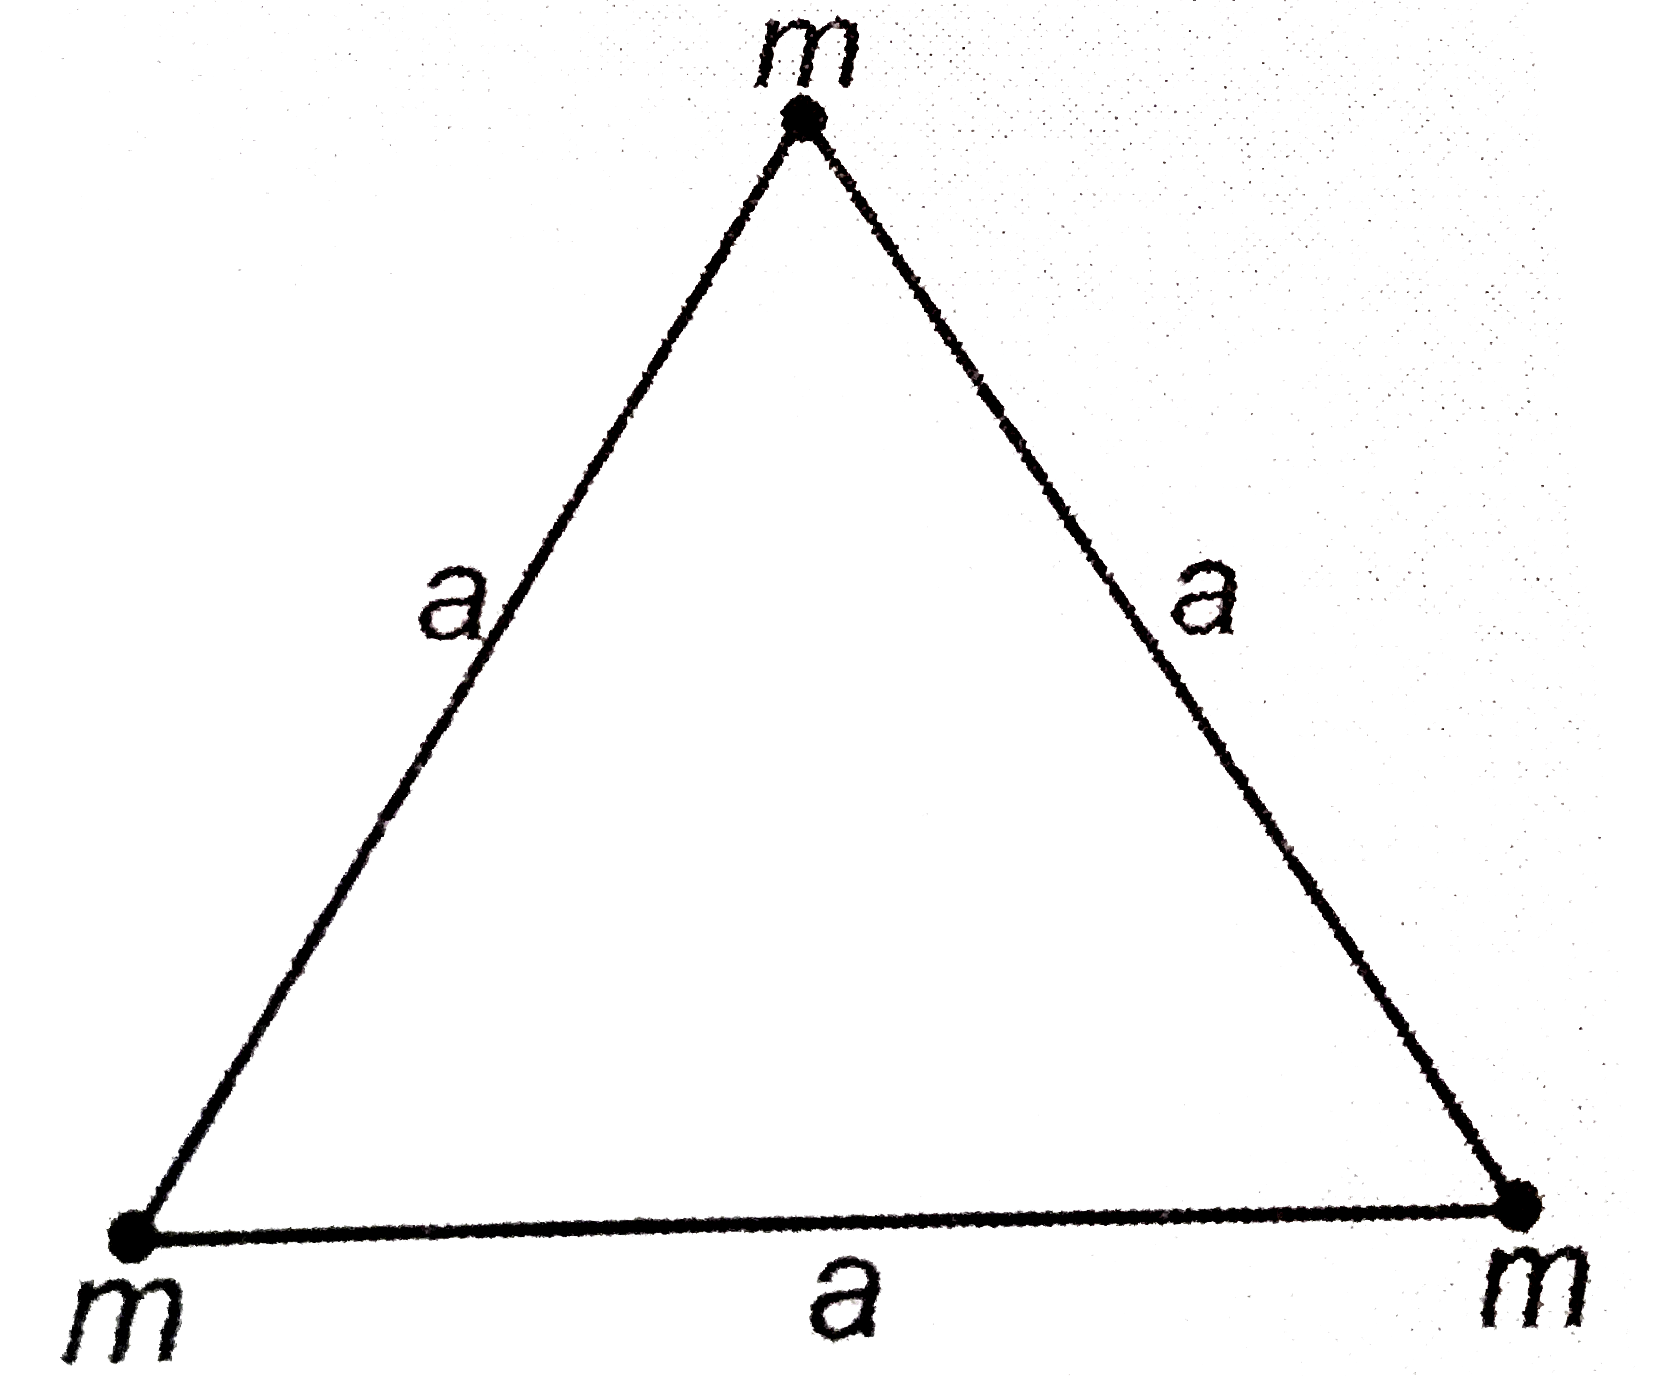 संलग्न चित्र में प्रदर्शित तीन कणो के निकाय के द्रव्यमान केंन्द्र की स्थिति ज्ञात कीजिये |